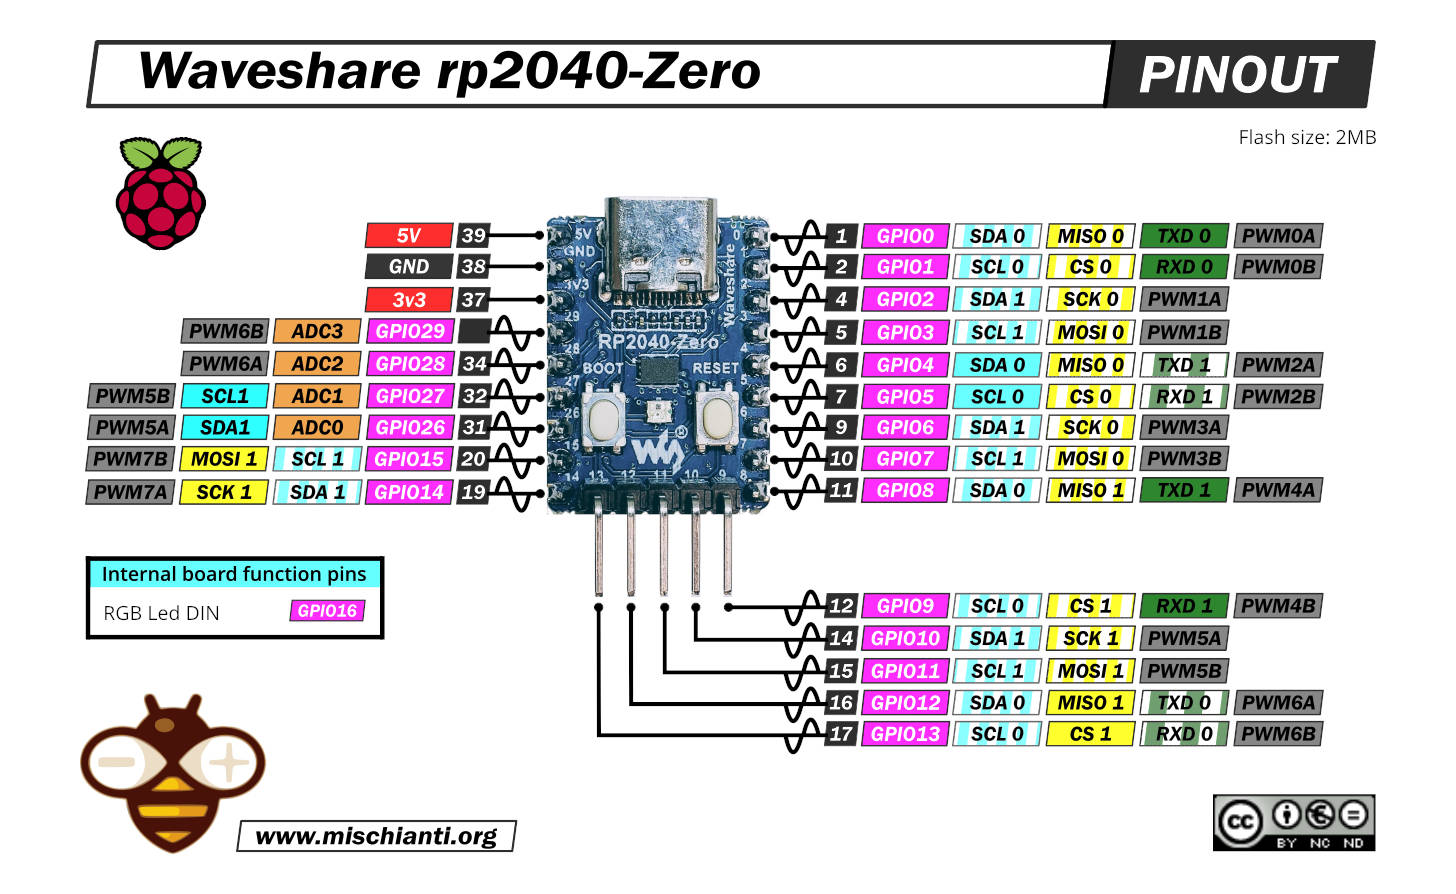 Waveshare rp2040-zero: high-resolution pinout and specs – Renzo Mischianti